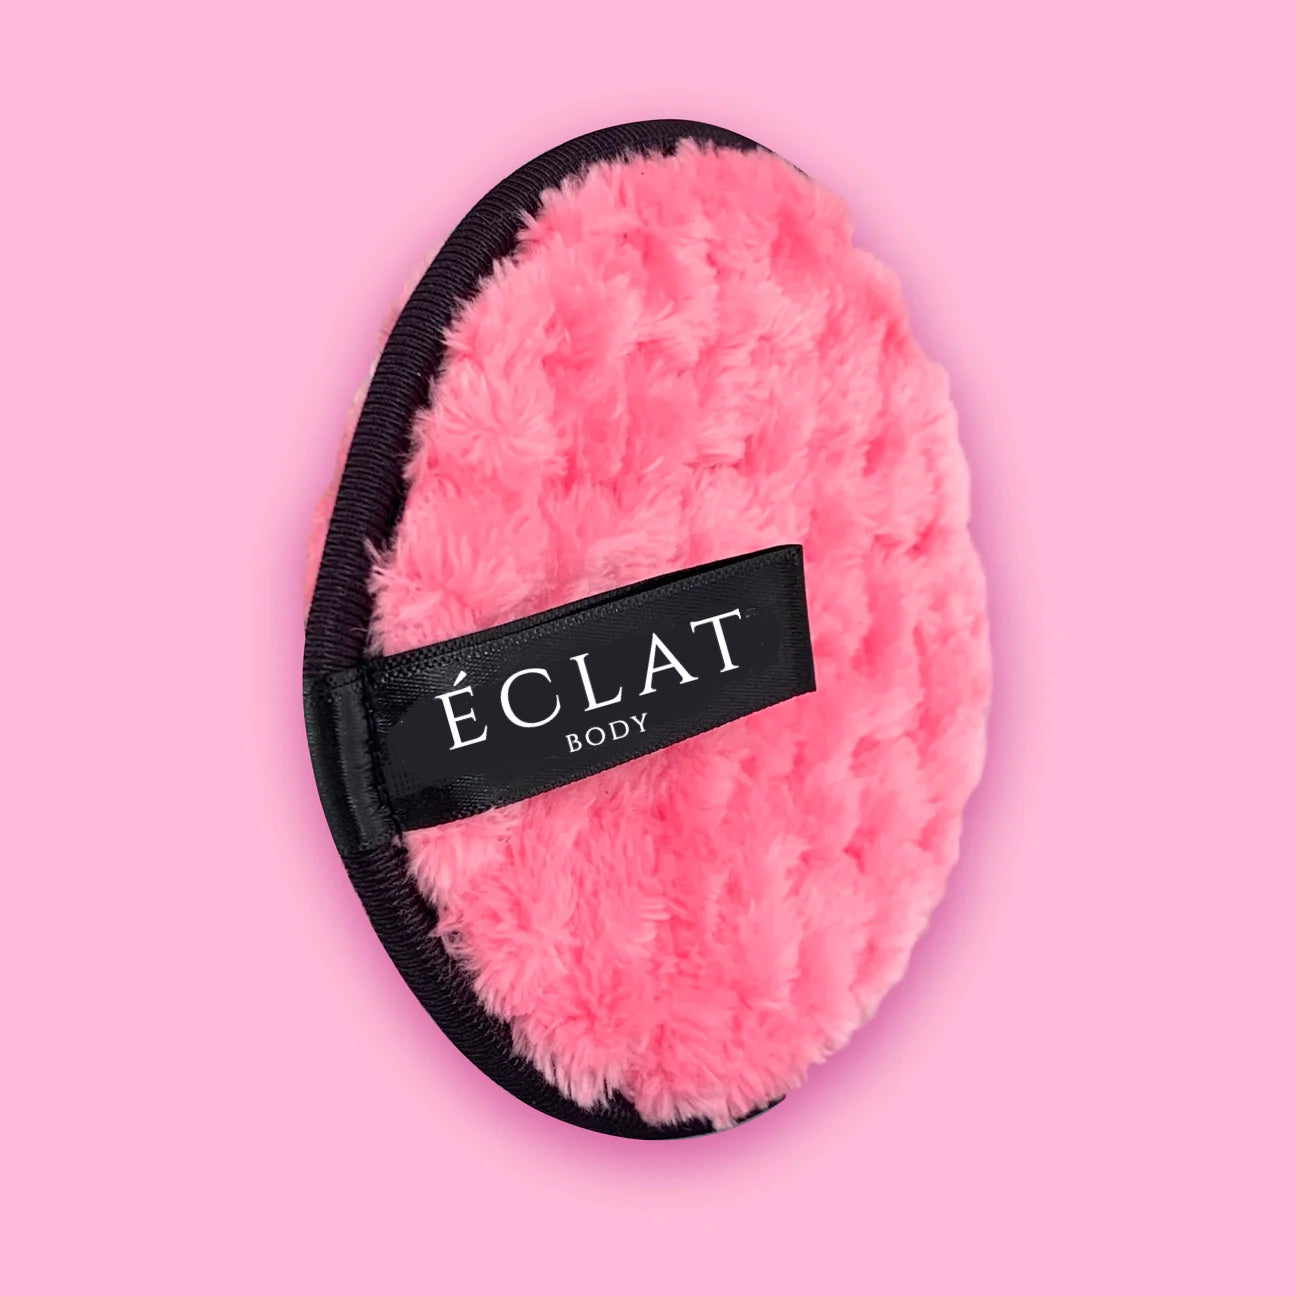 Eclat Makeup Eraser | Deep Cleansing Makeup Remover Puff